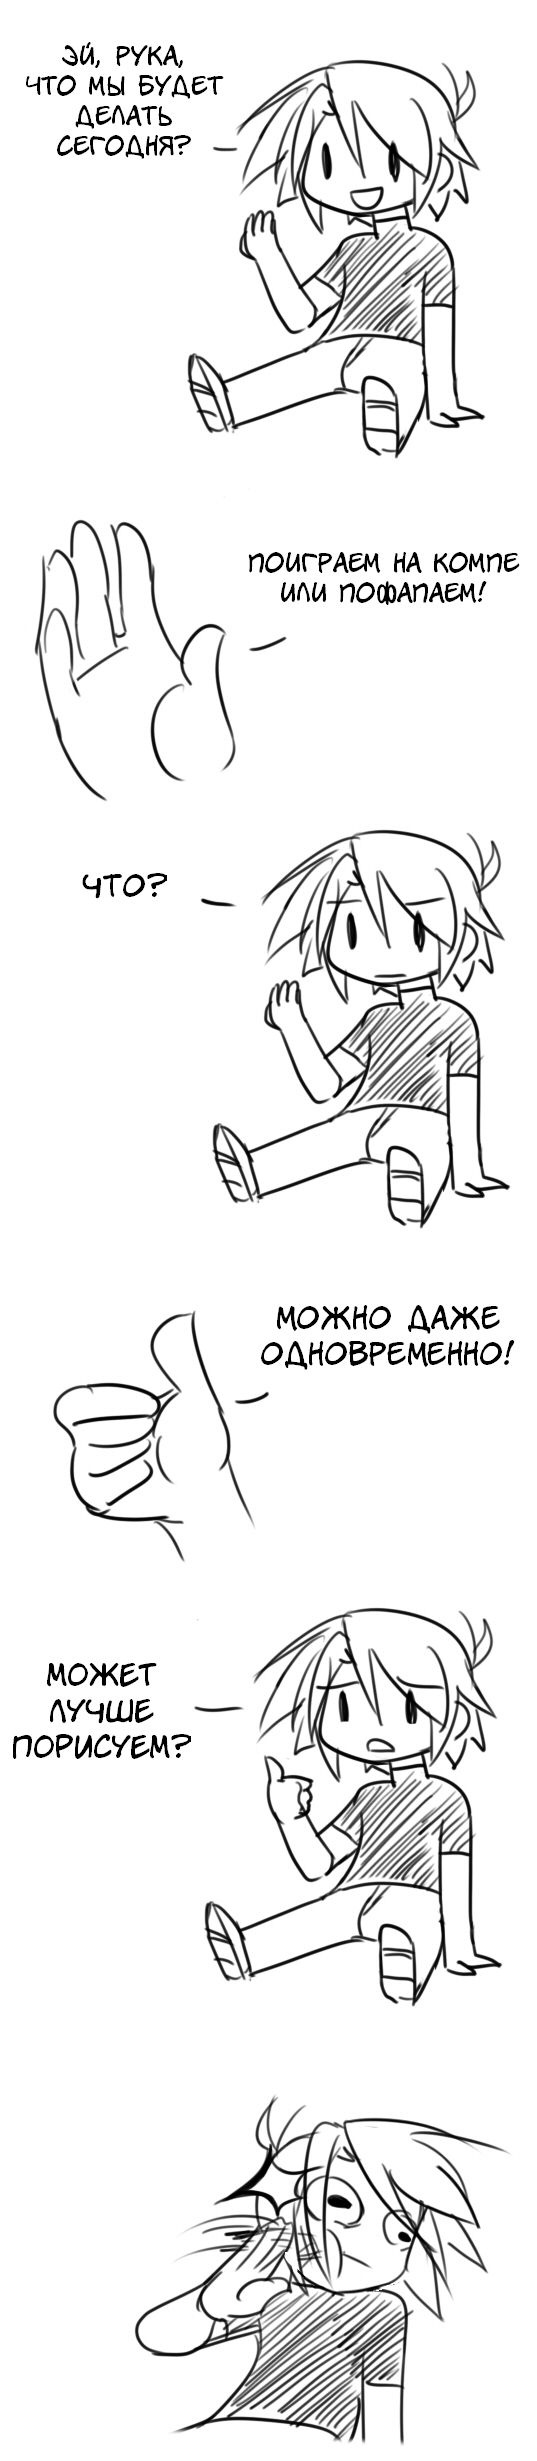 Смешные комиксы (20 картинок) 13.08.2014